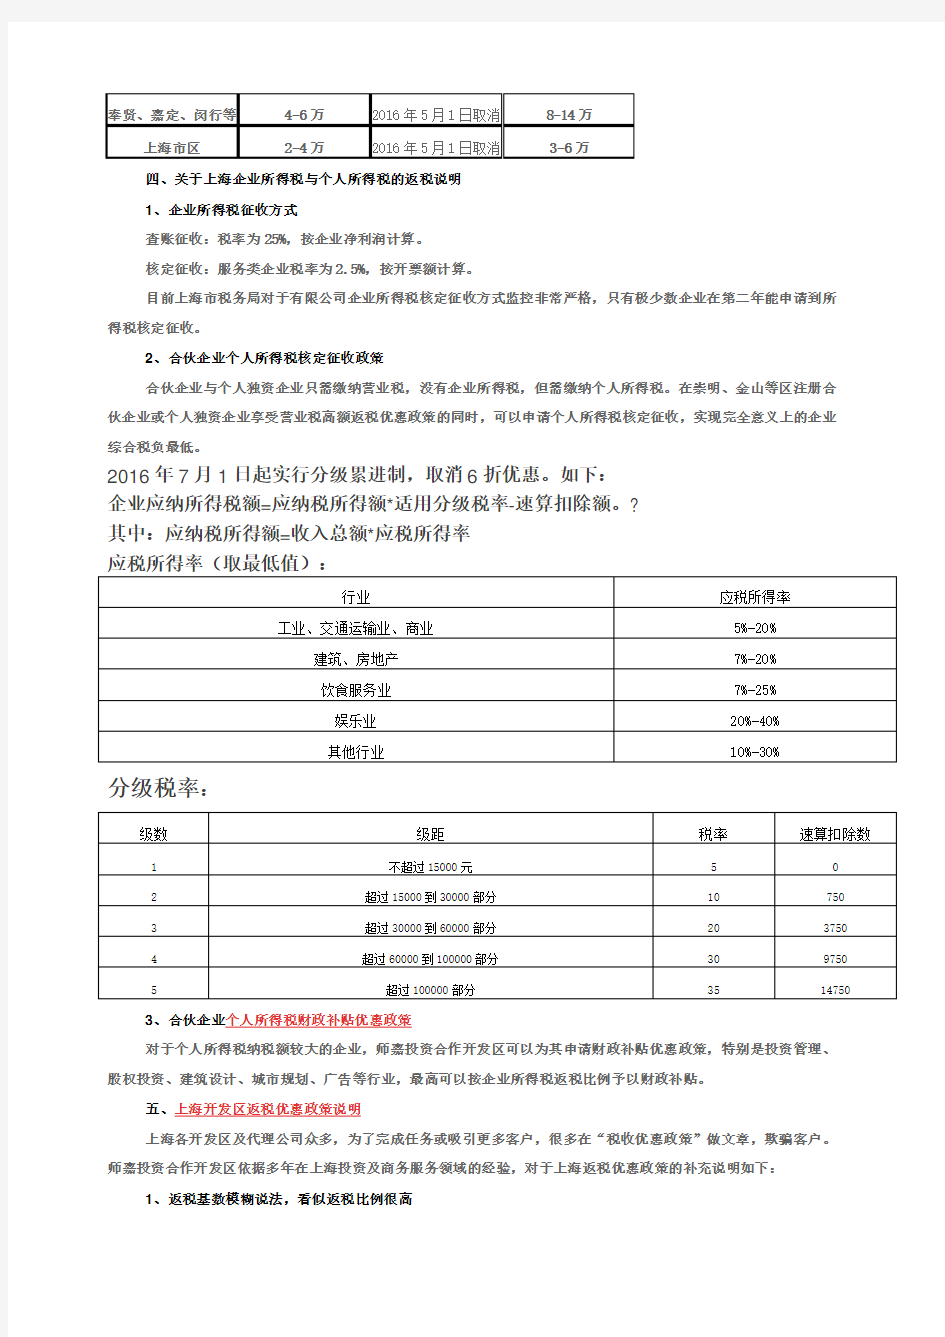 上海企业返税政策全集